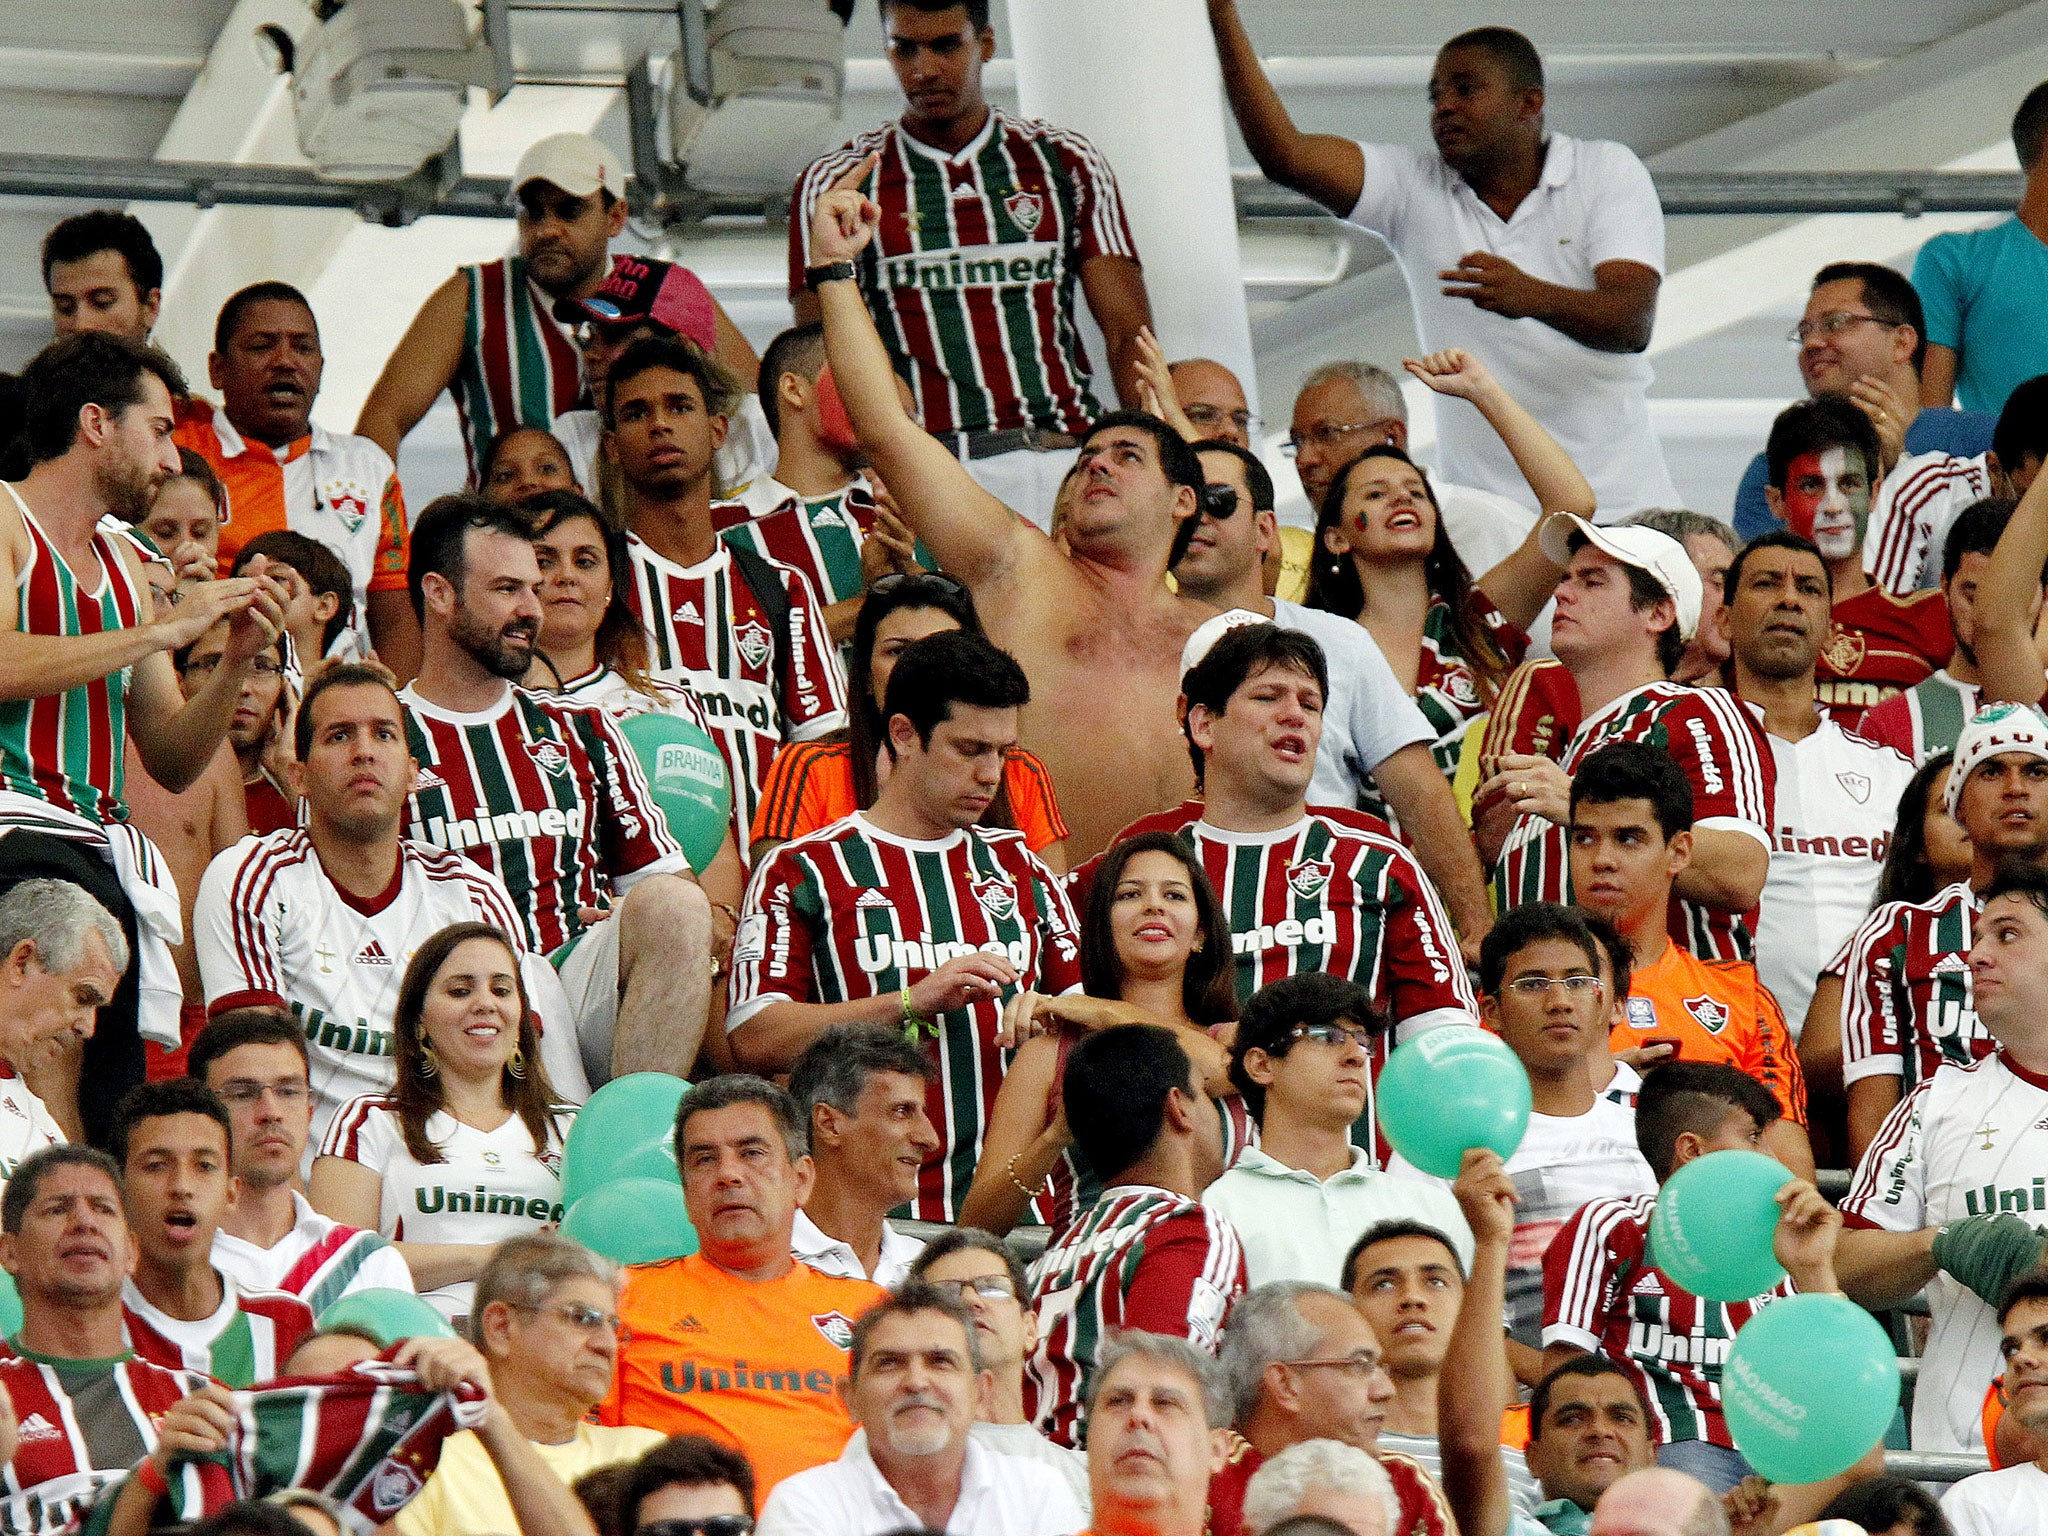 Fans of Fluminense